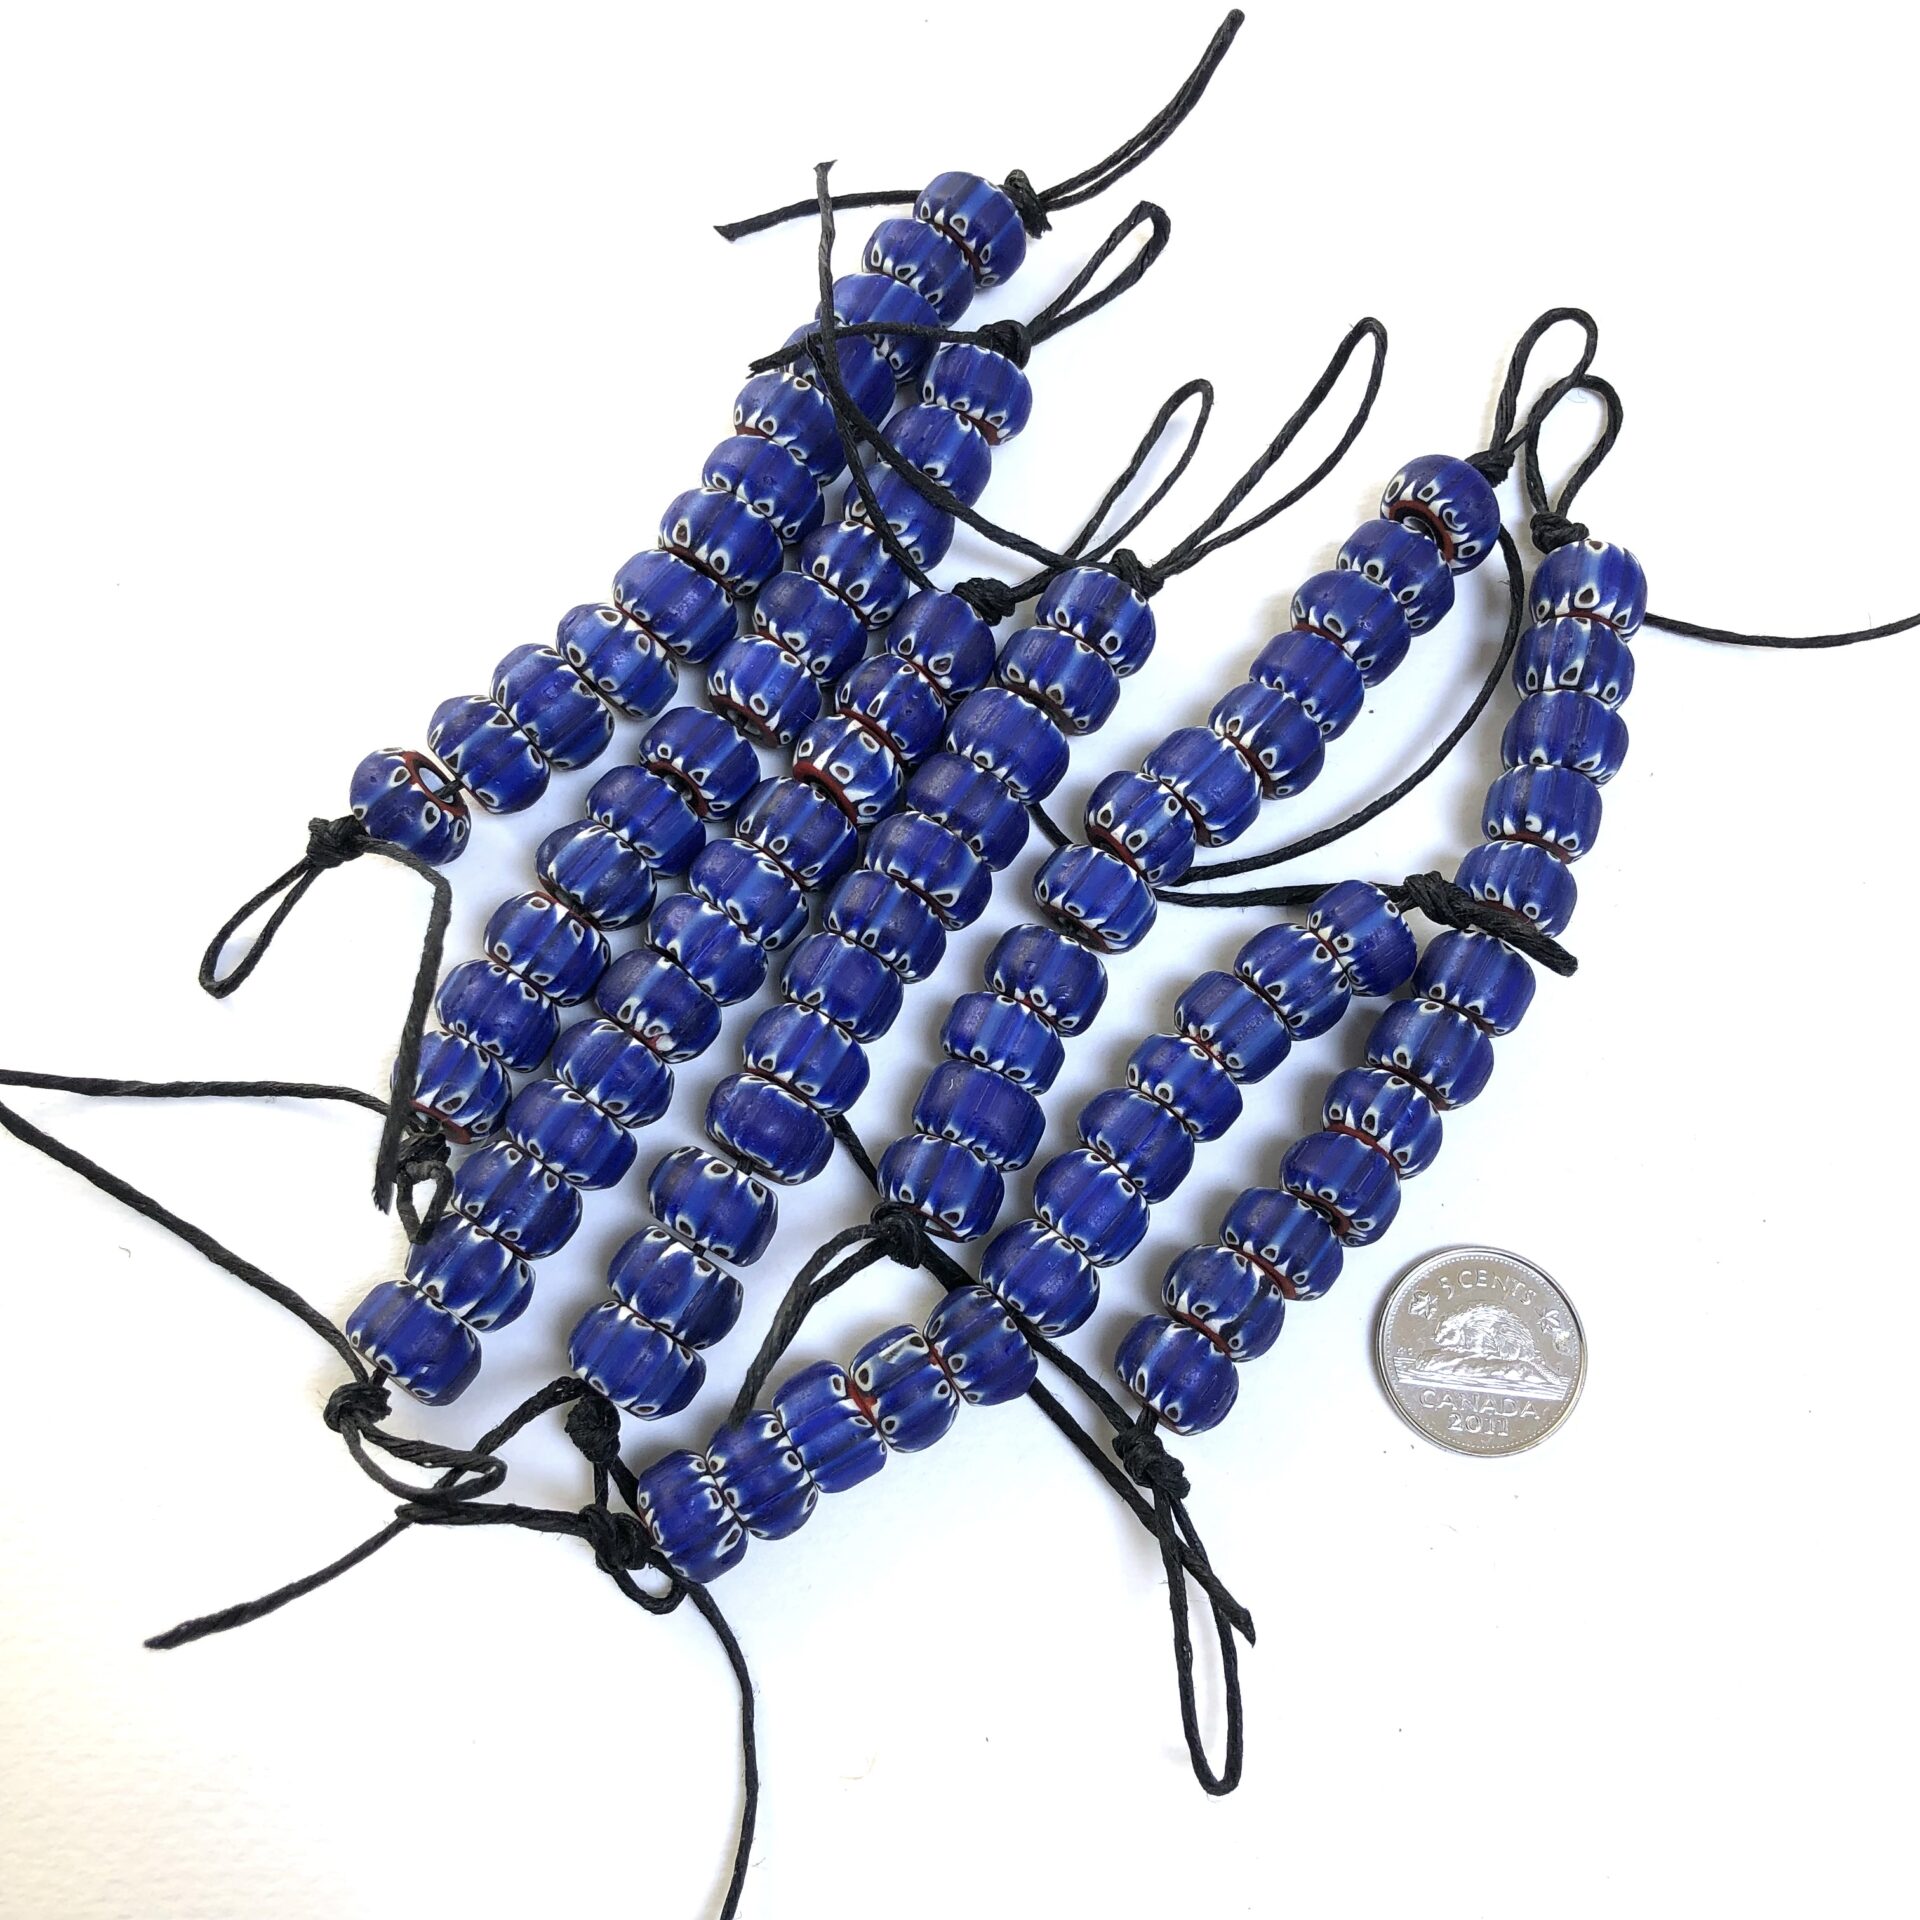 Blue Chevron Beads